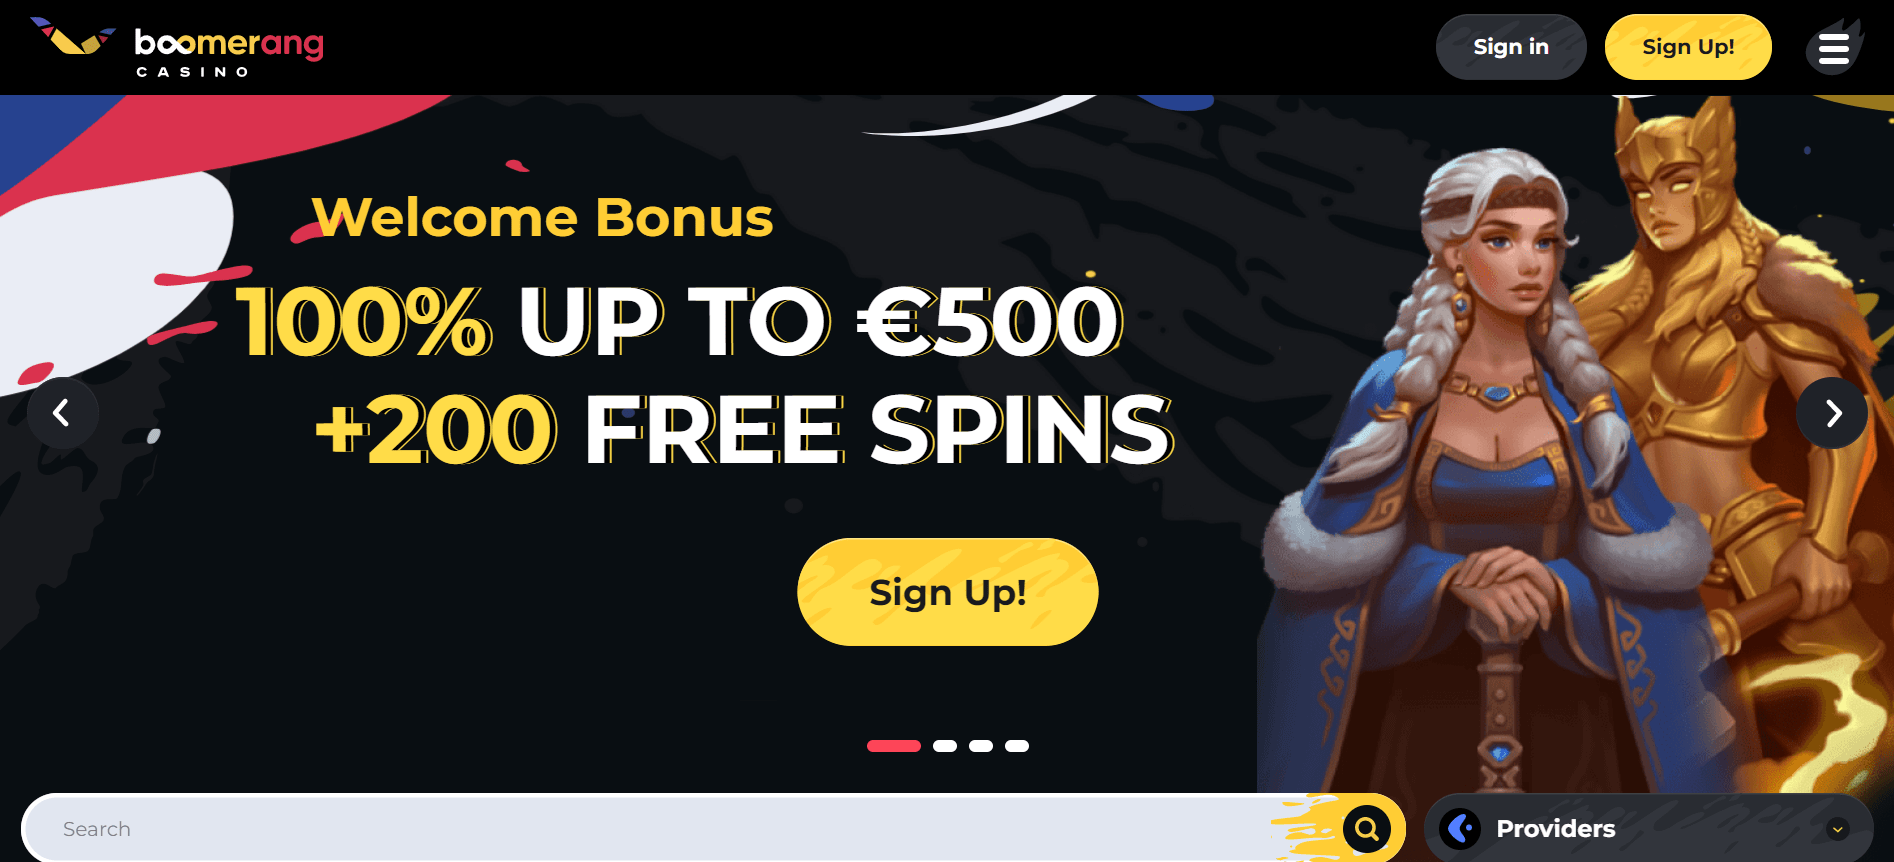 Boomerang Casino bonus